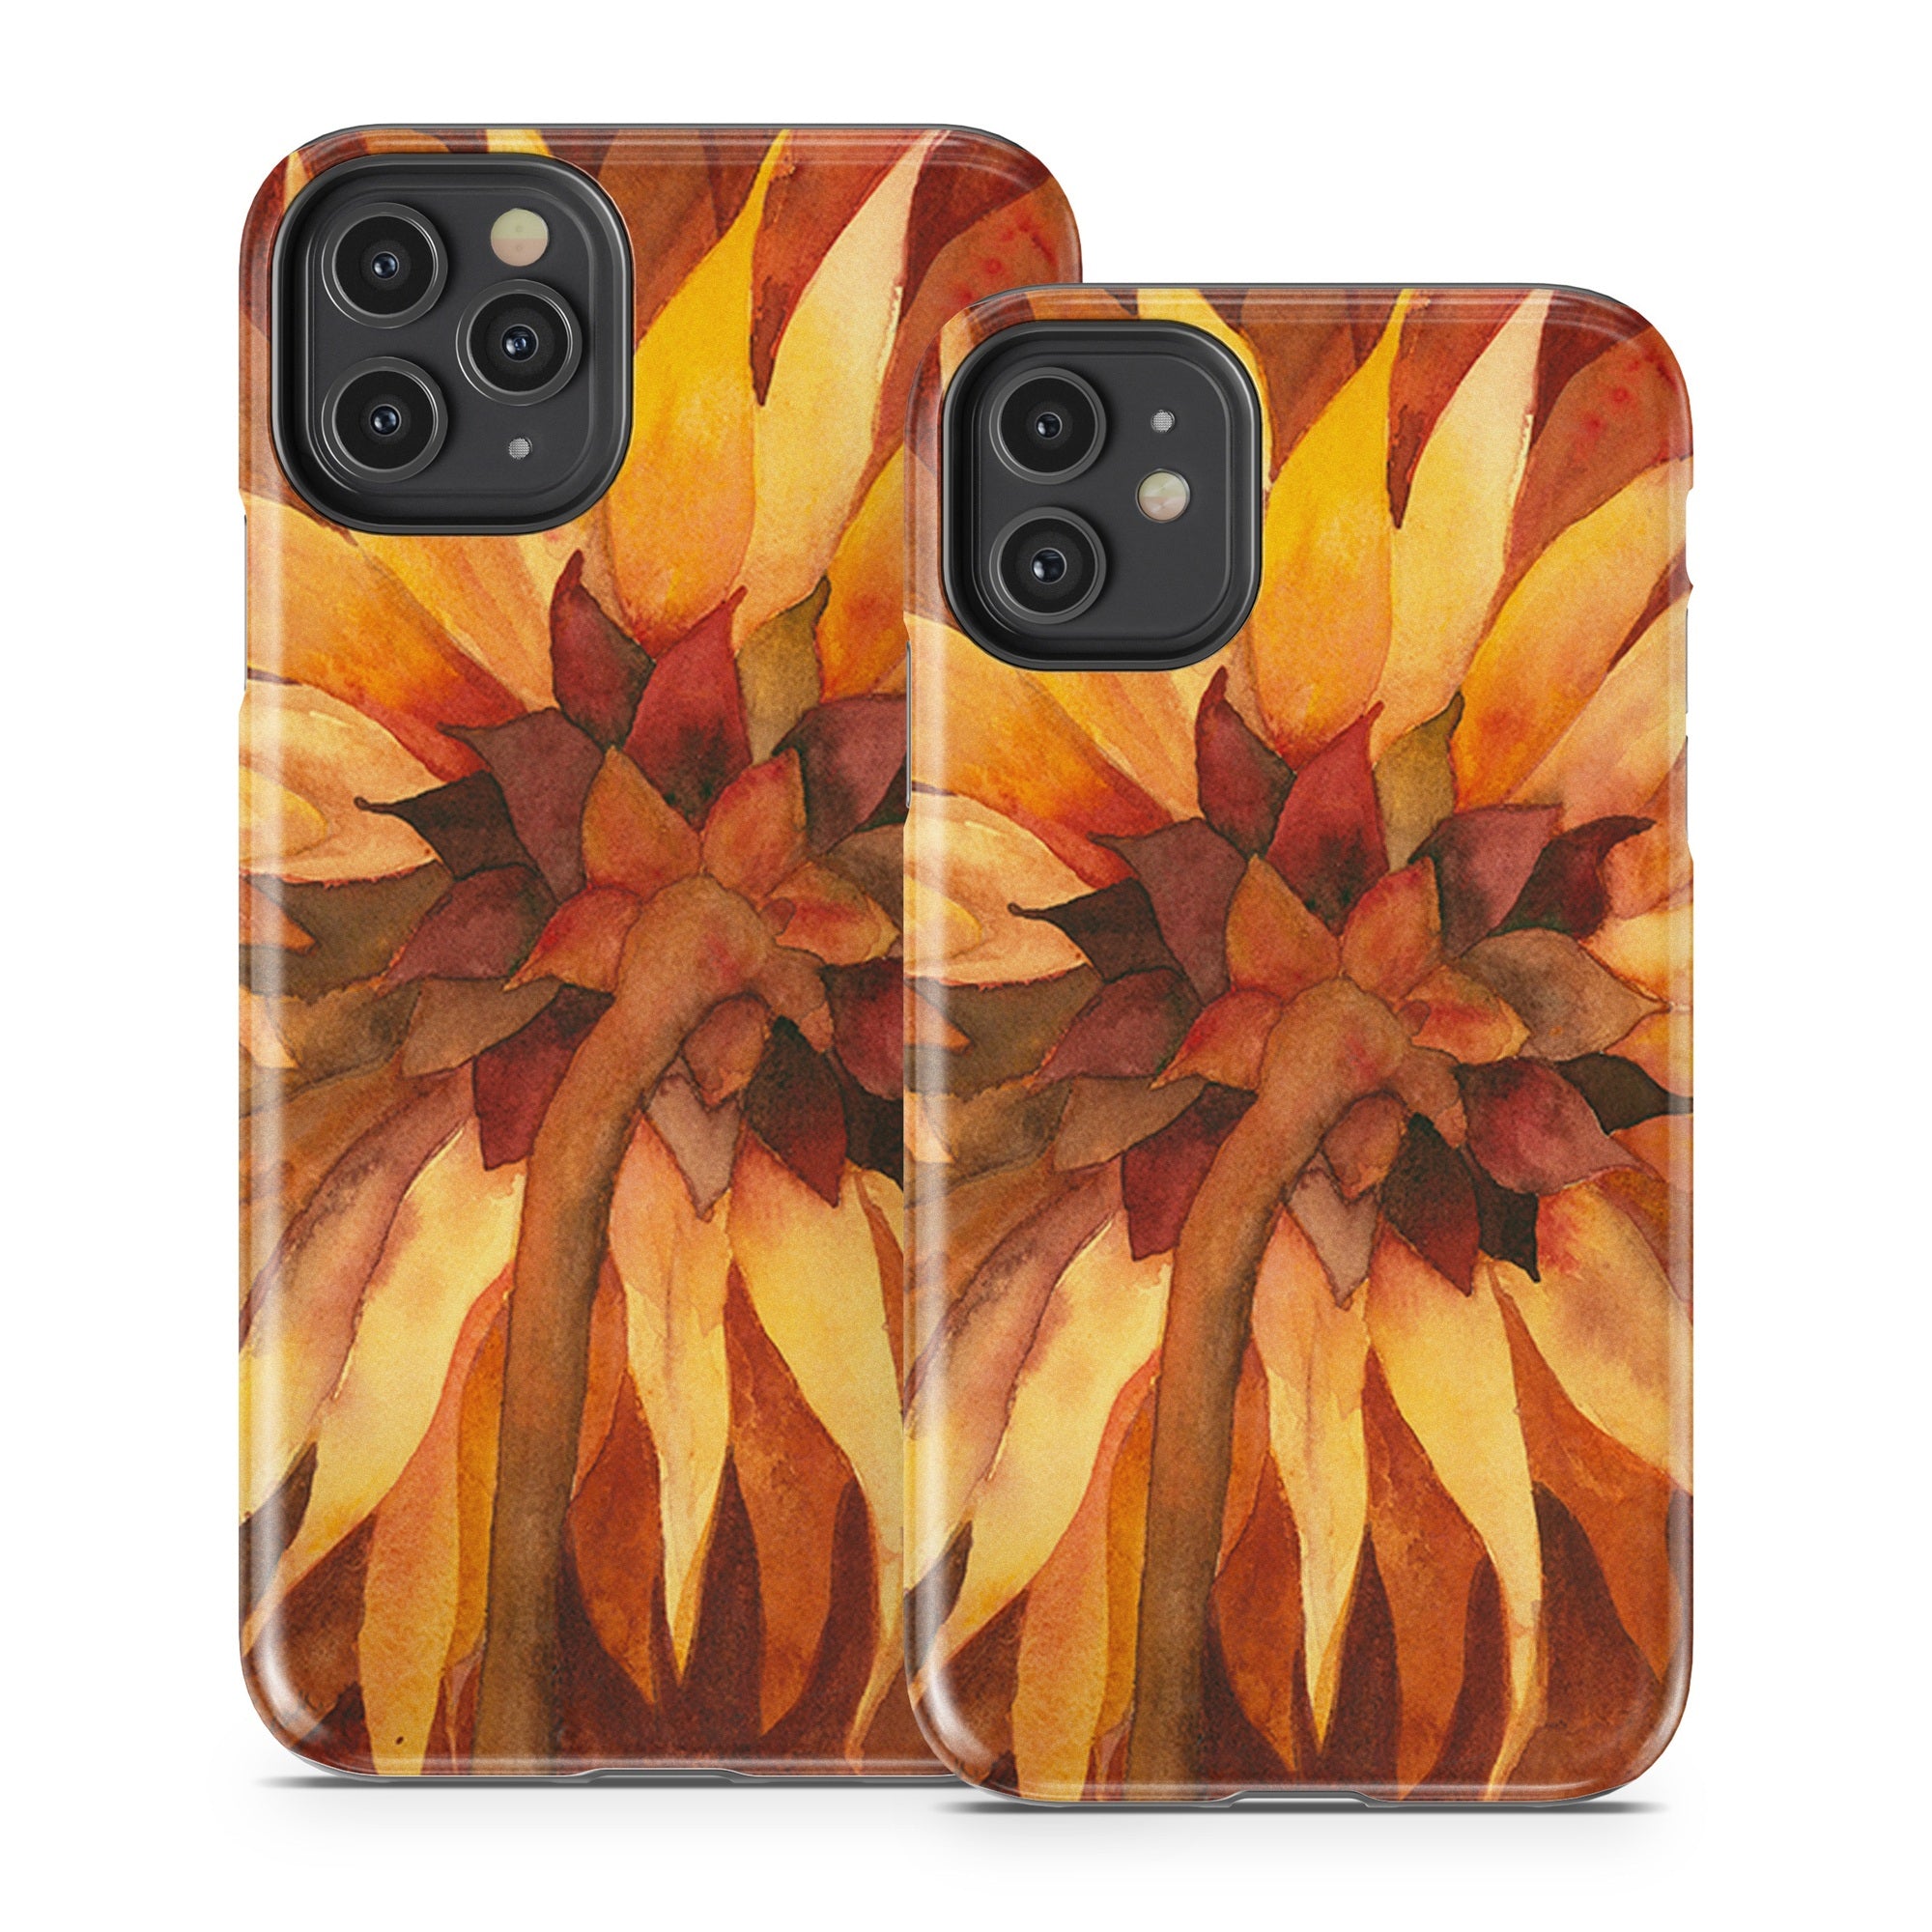 Autumn Beauty - Apple iPhone 11 Tough Case